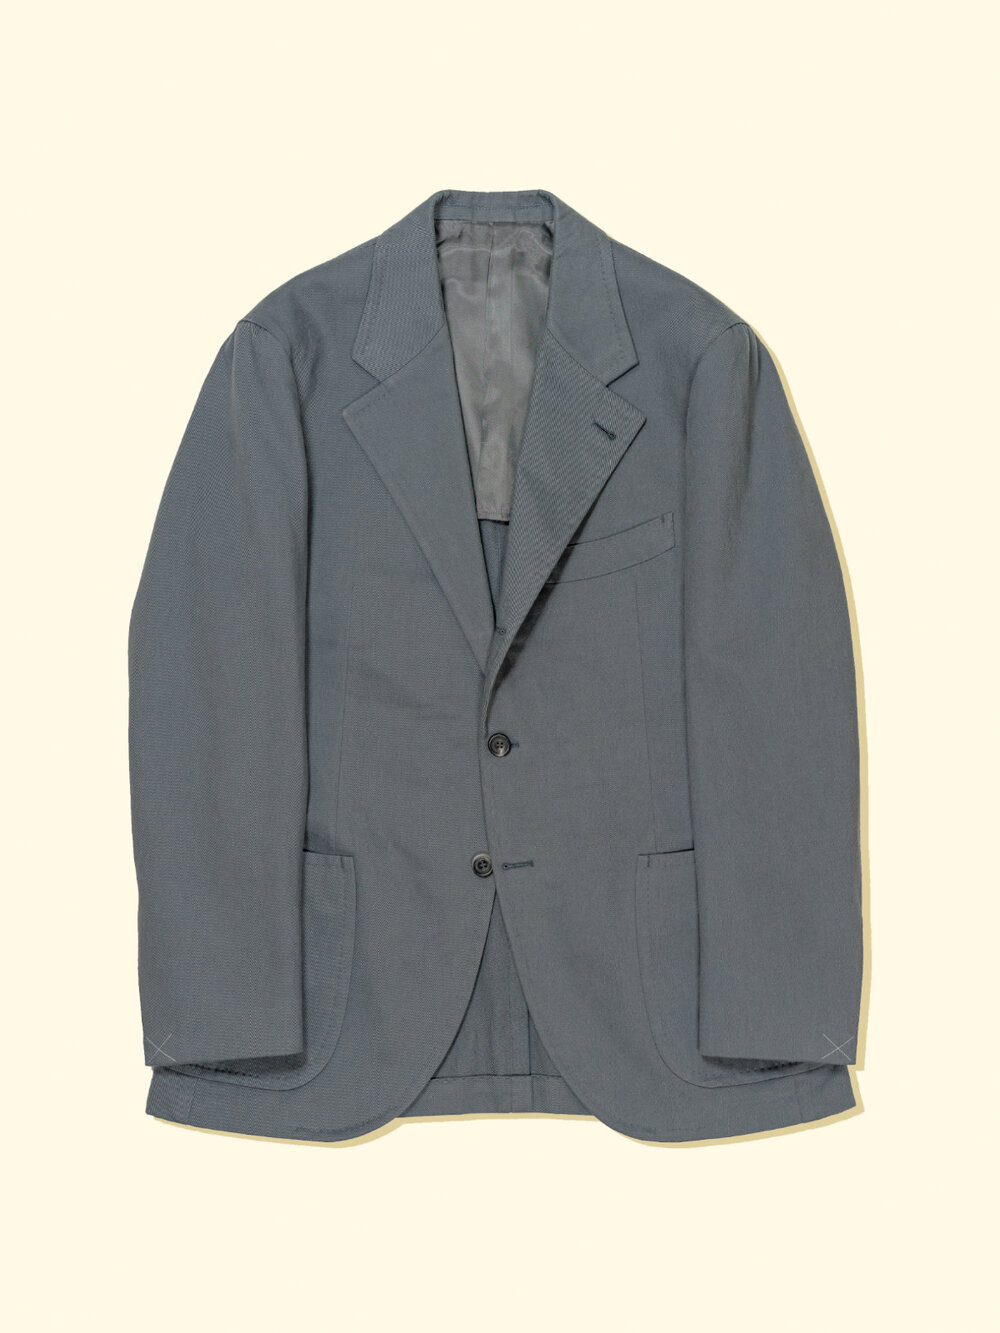 TA-suitjacket-grey-0.jpg